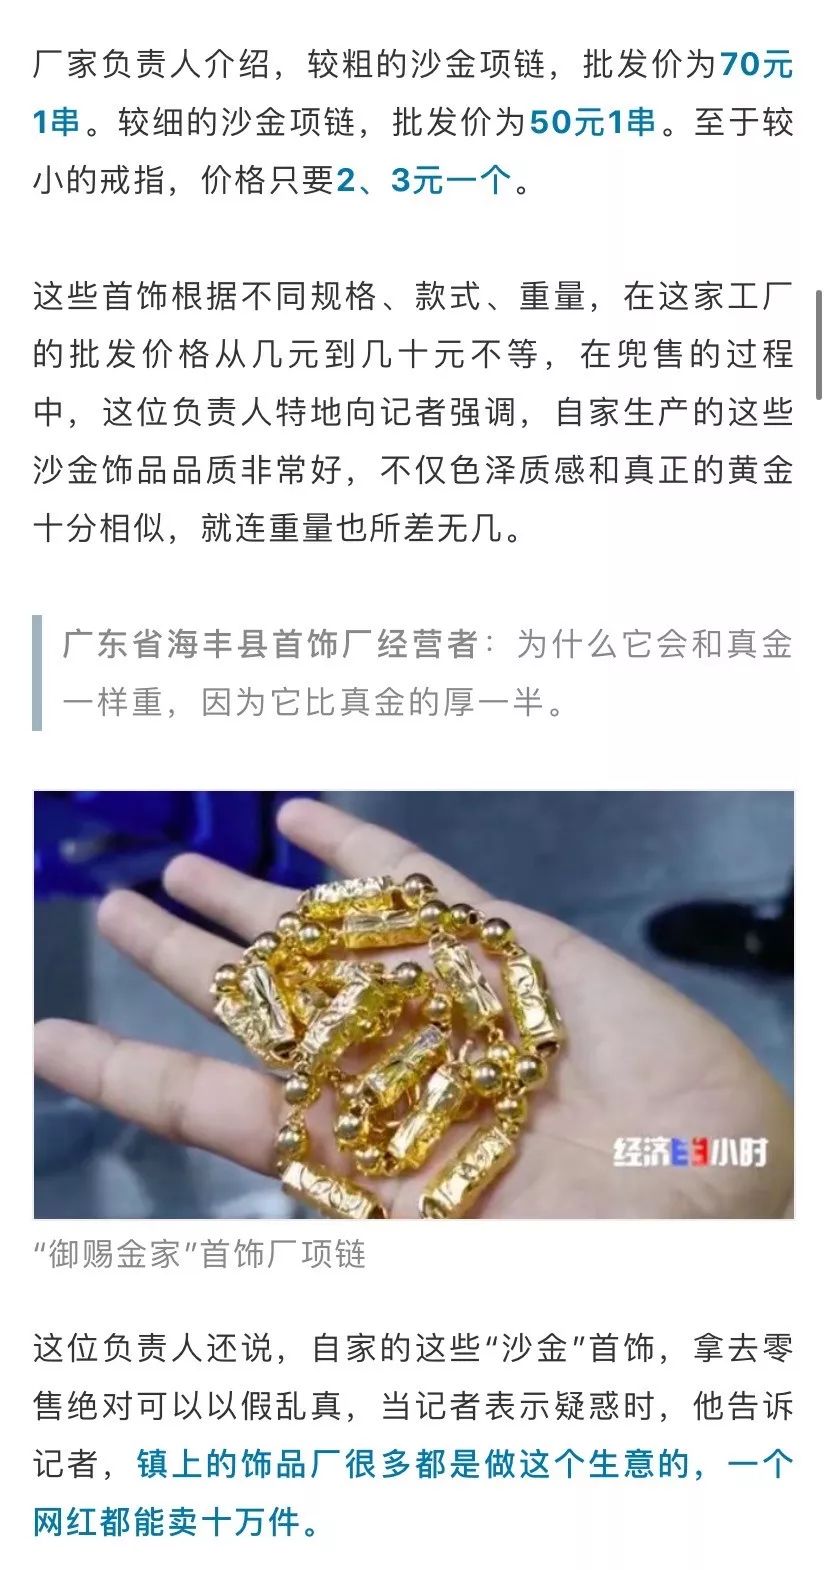 香港浙商期货福建人注意! 成本几块钱, 市面上当黄金出售! 巨